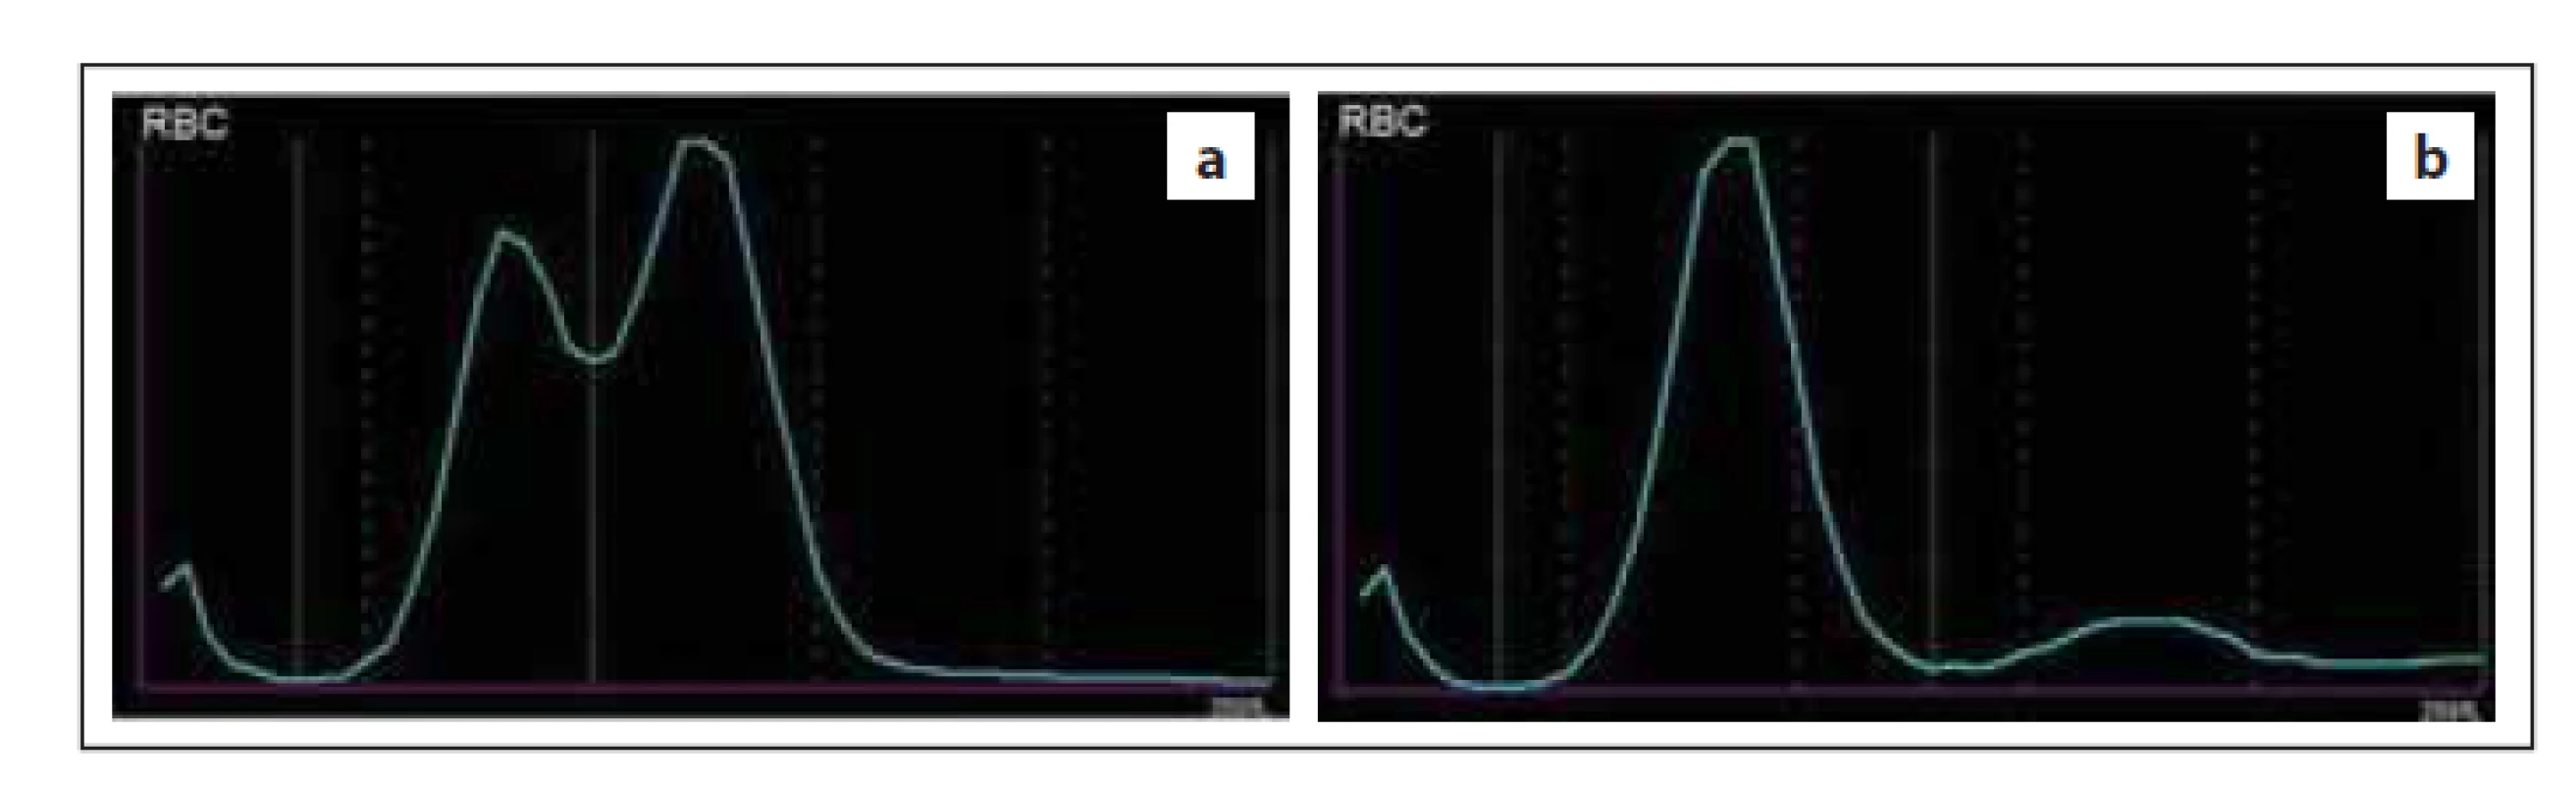 Abnormální průběh distribuční křivky RBC způsobený (a) přítomností
dimorfní populace RBC, (b) aglutinací erytrocytů v přítomnosti chladových
protilátek (zdroj: laboratoř IV. IHK).<br>
RBC – erytrocyty